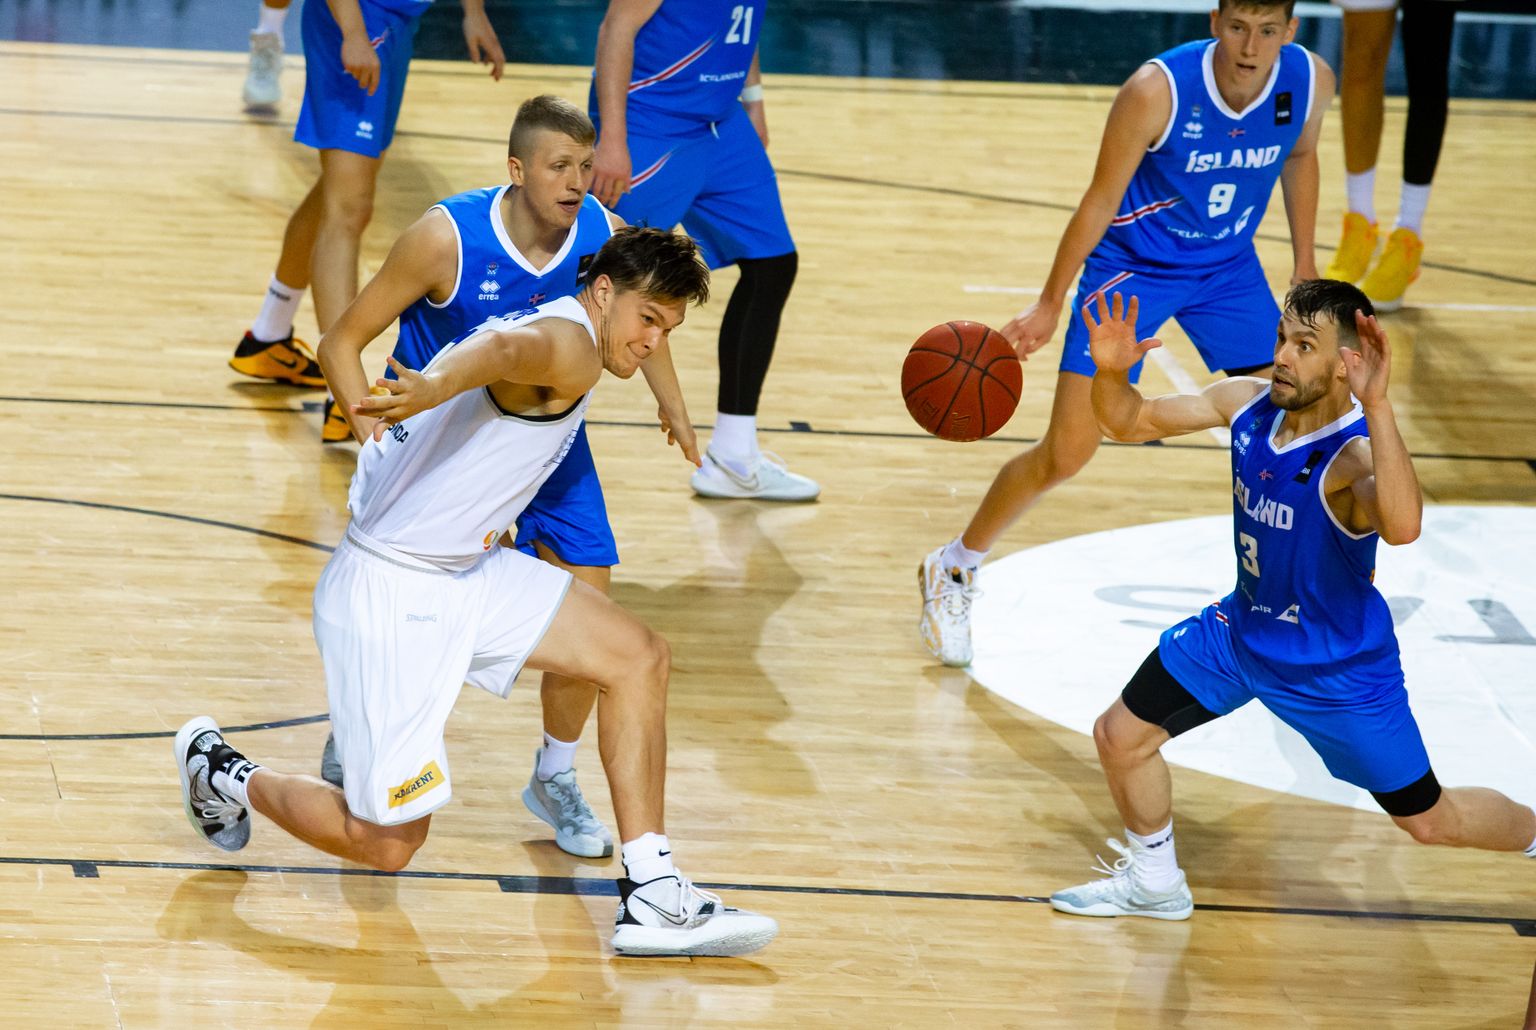 Eesti korvpallikoondis pidas suvel maavõistluse Islandiga. Mänguhoos on Eesti eesliiniliider Maik-Kalev Kotsar (ees vasakul).